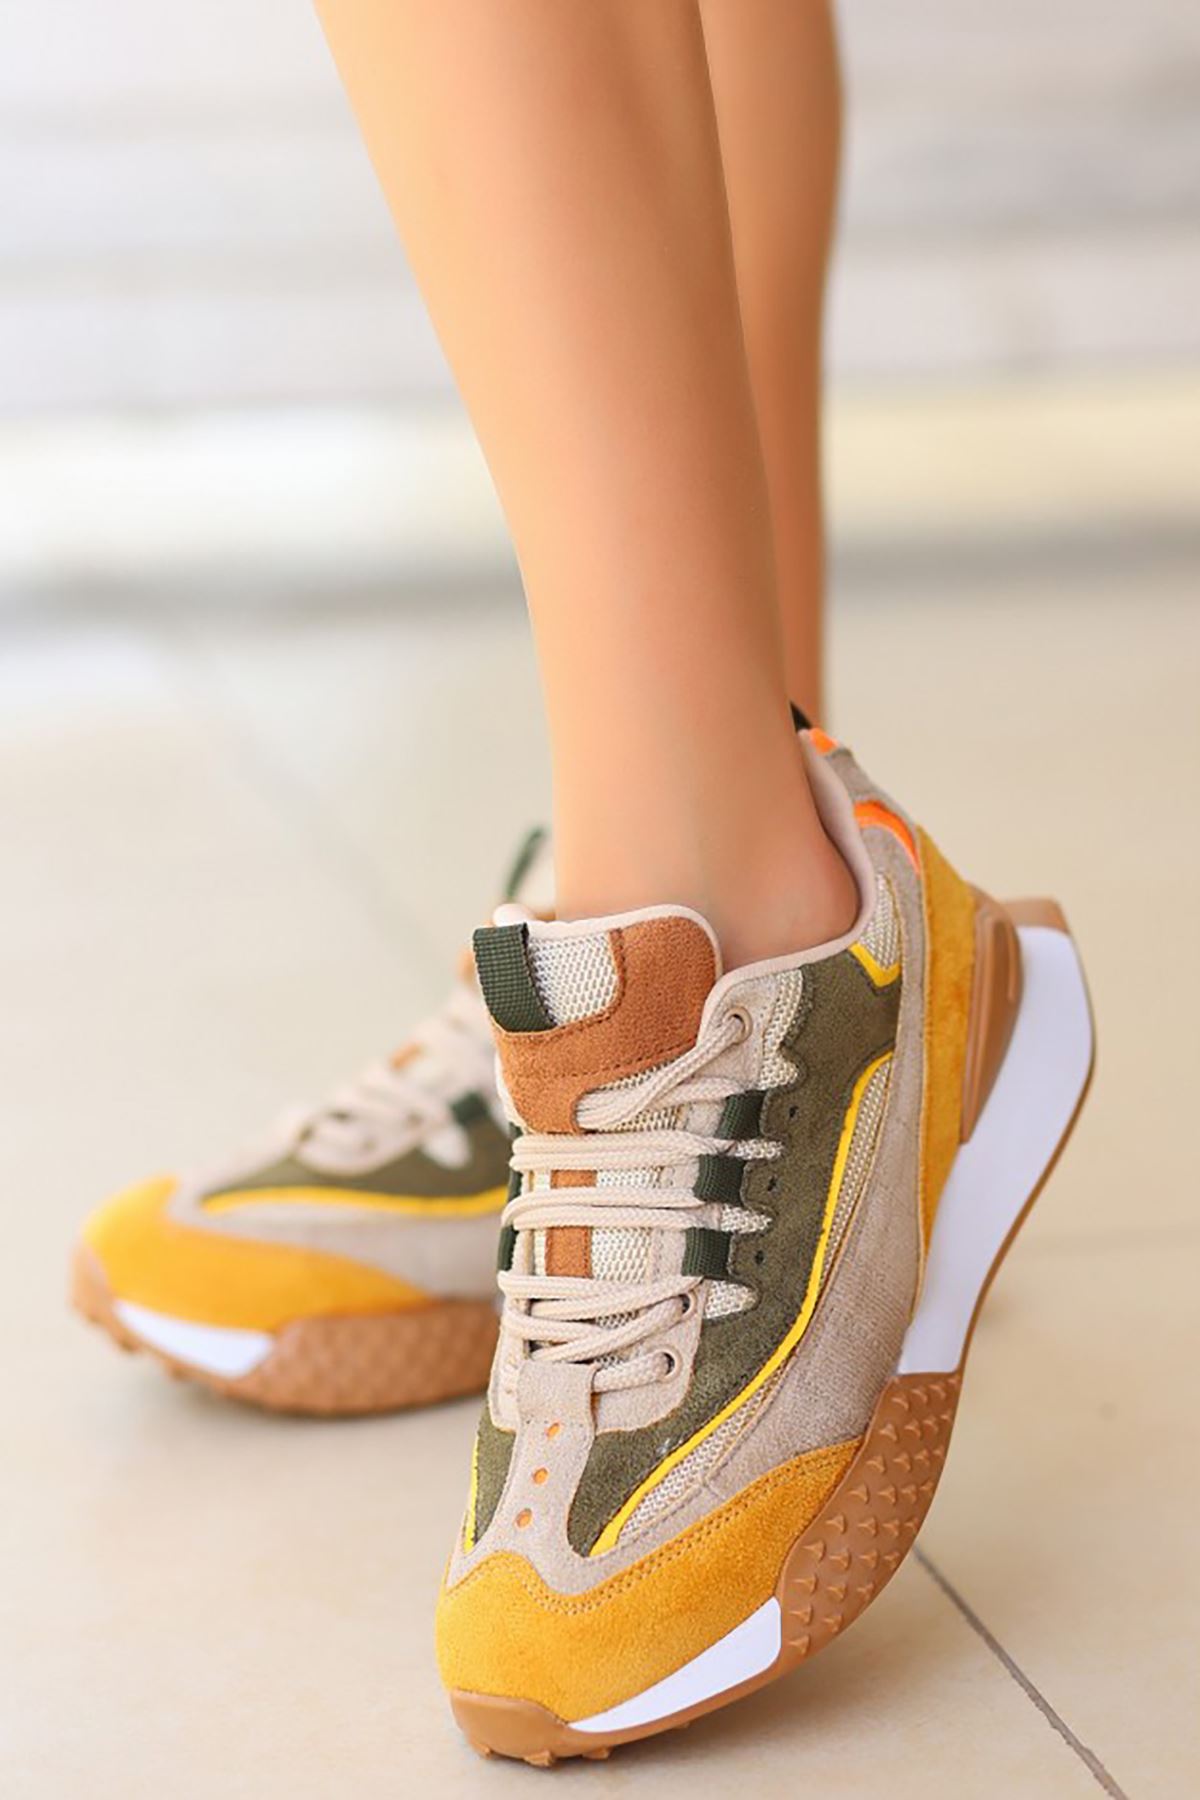 Mida Shoes ERBJeyar Hardal Yeşil Deri Bağcıklı Kadın Spor Ayakkabı